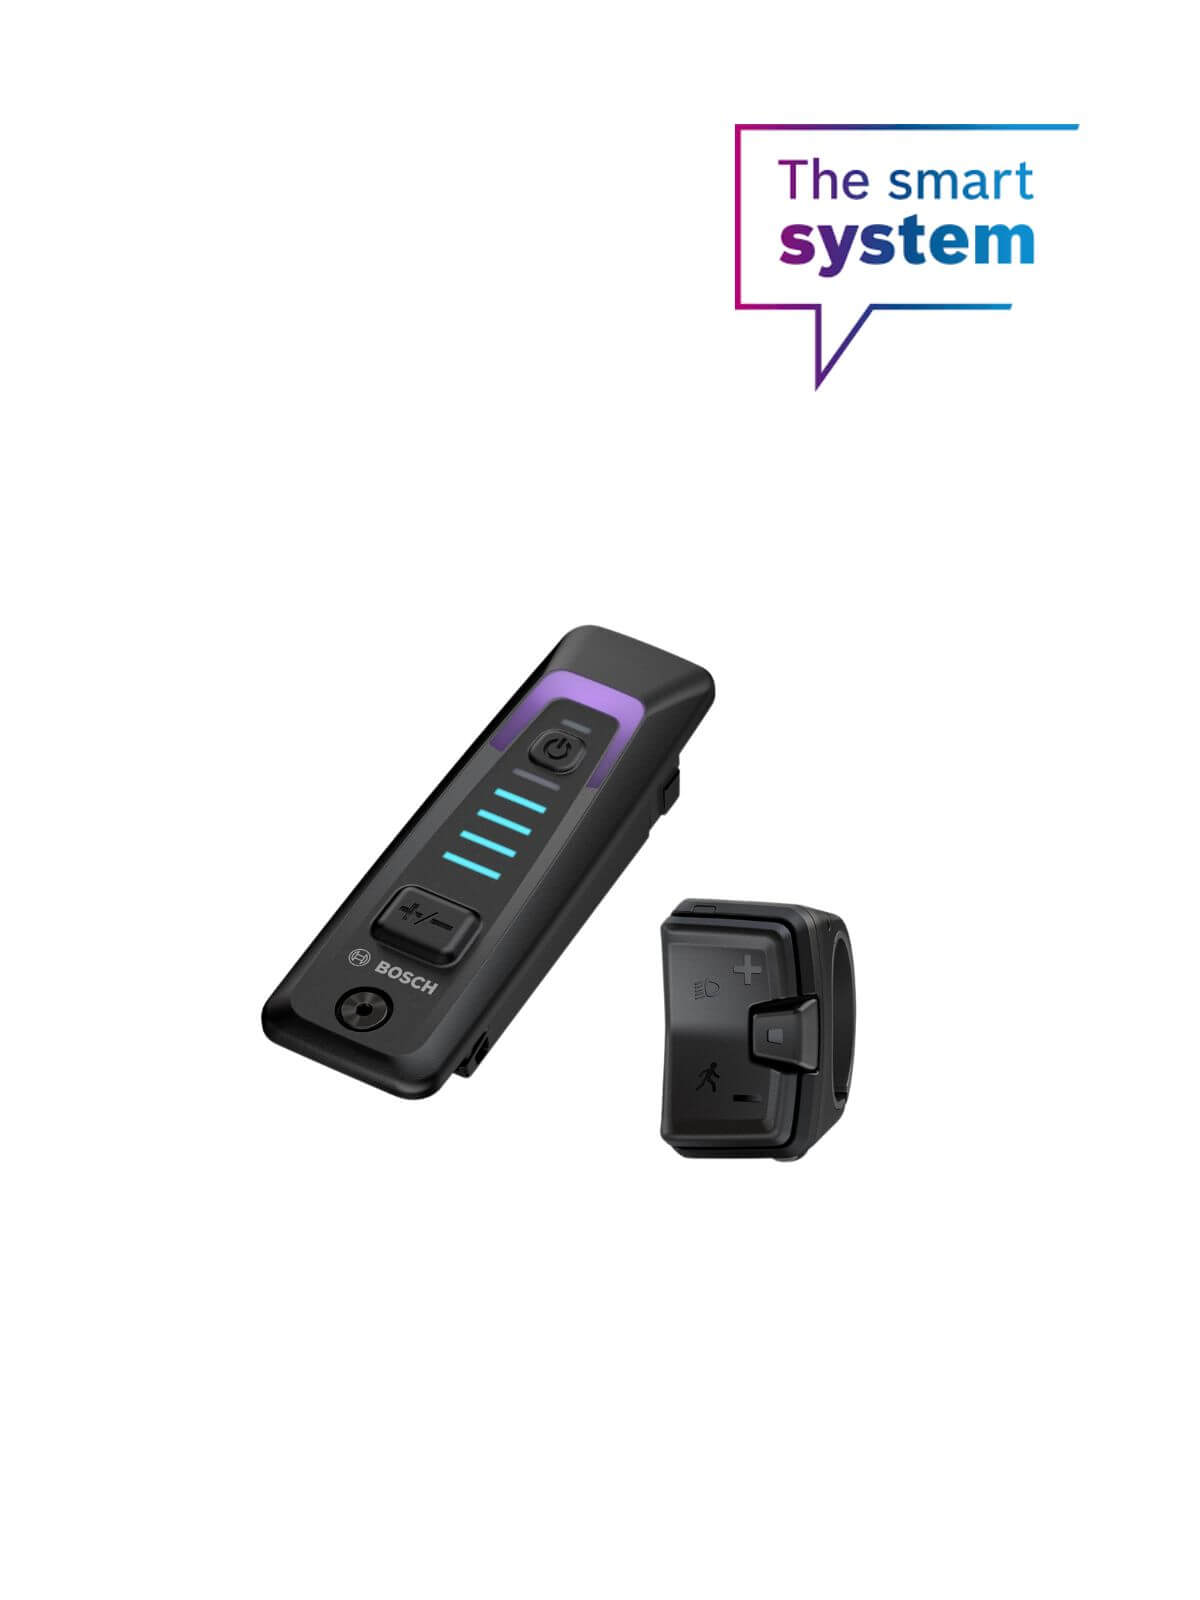 Bosch system controller mini remote